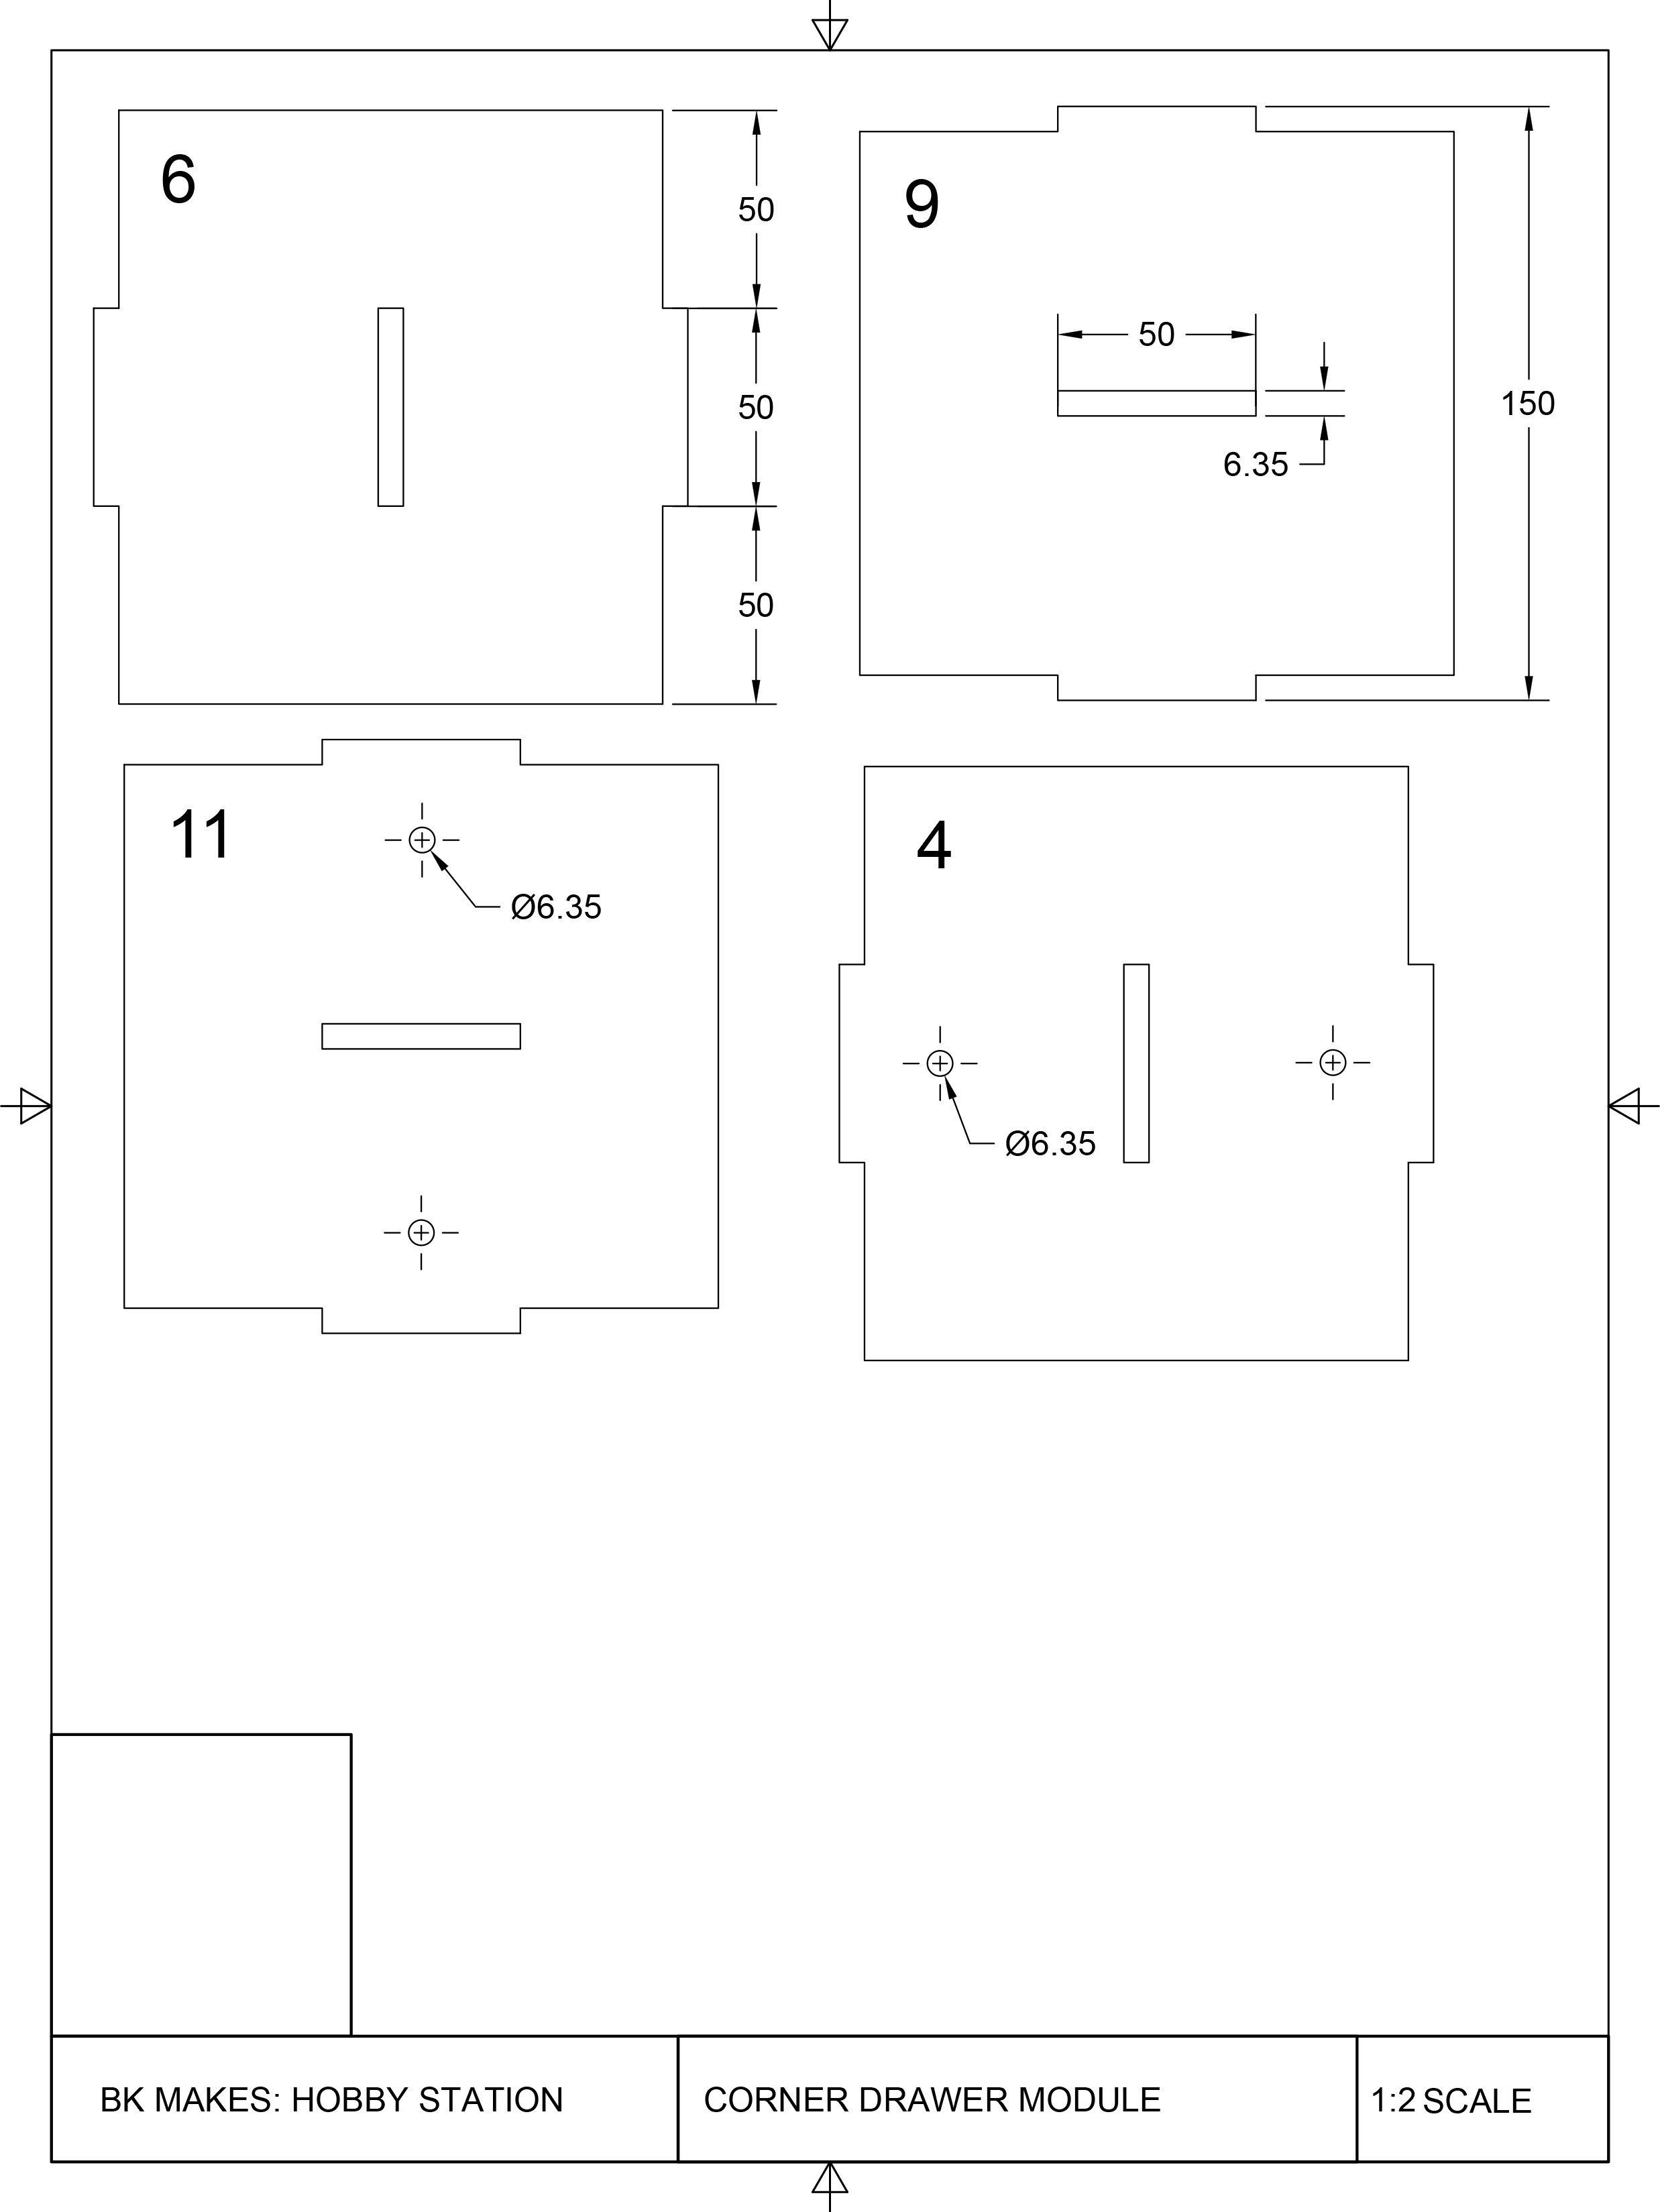 Corner Drawer Module Templates-2.jpg